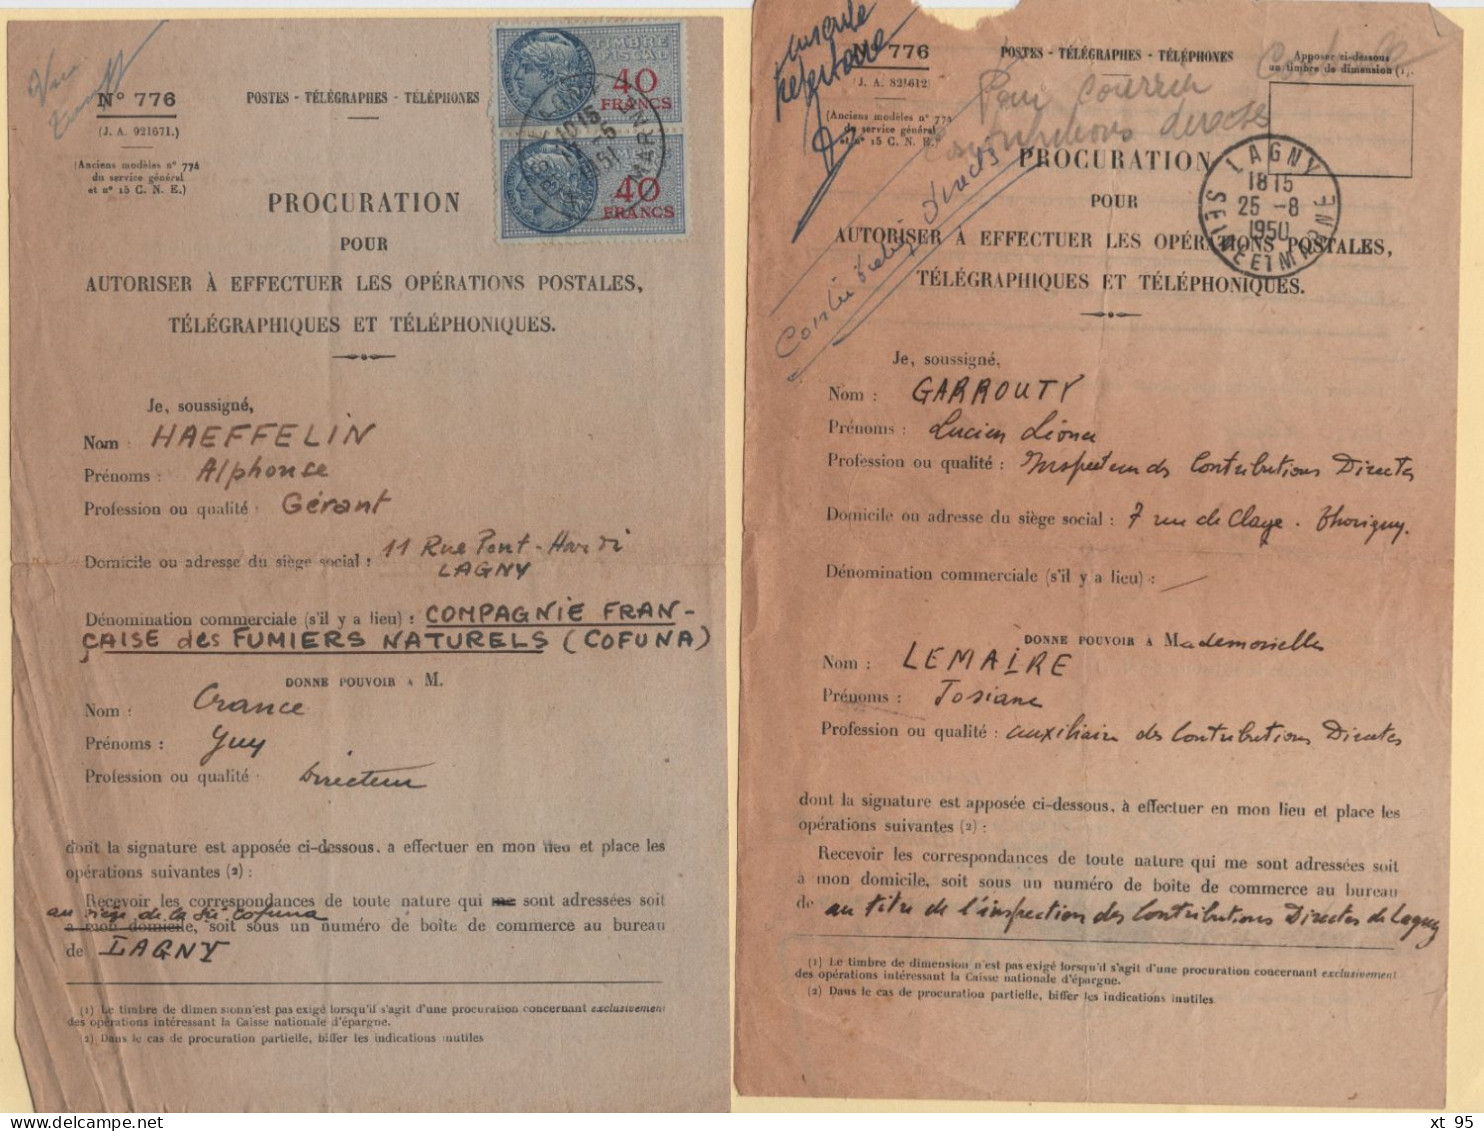 Procuration Pour Effectuer Les Operations Postales - Formulaire 776 - Lot De 2 Documents - Lagny Seine Et Marne - 1950 - 1921-1960: Moderne